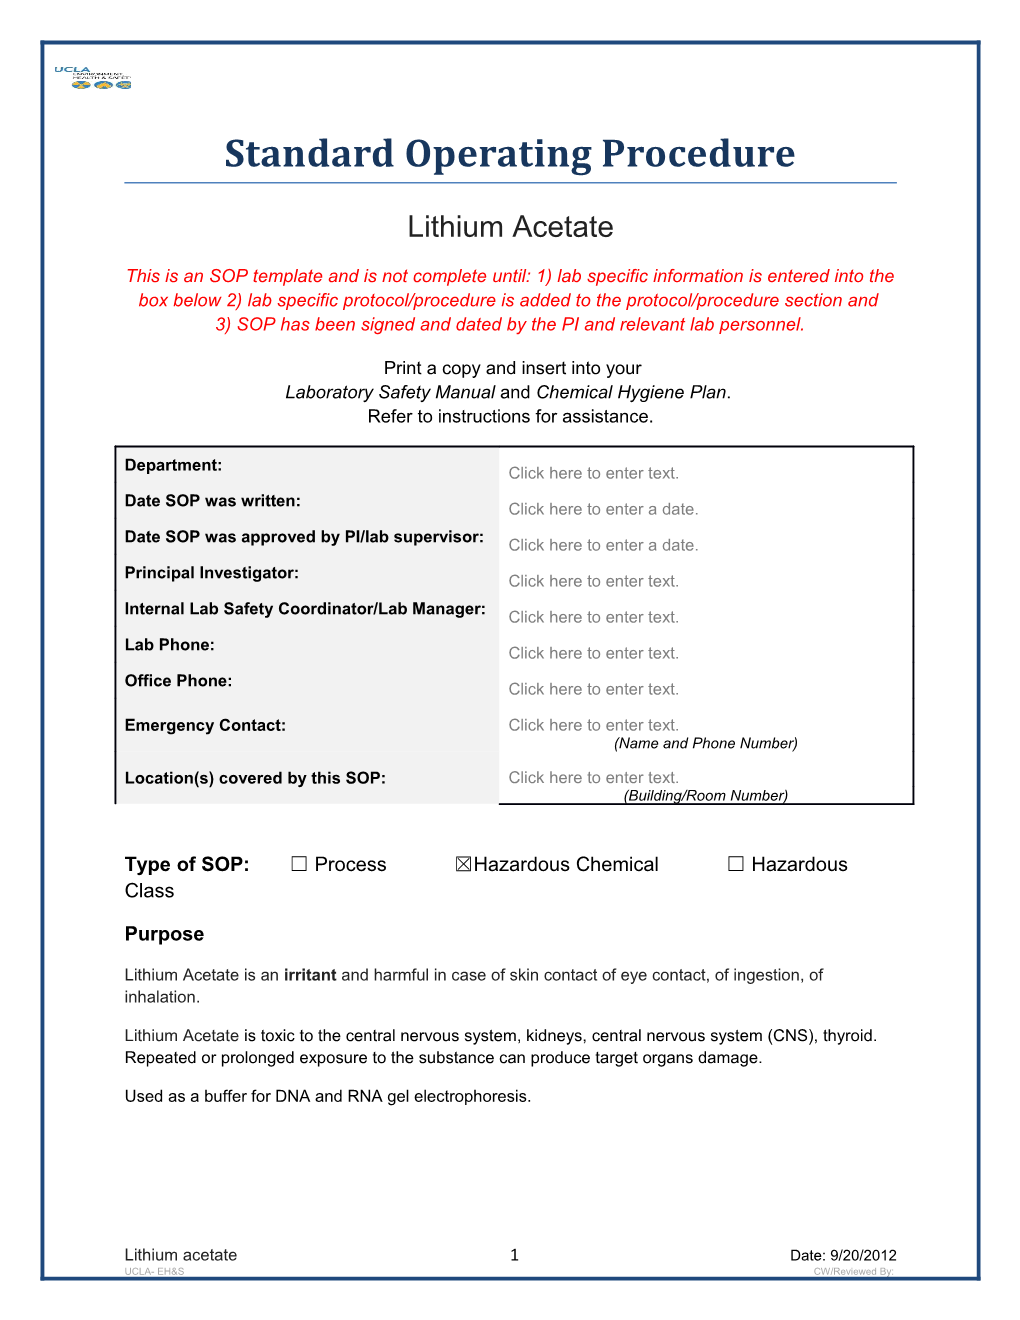 Standard Operating Procedure s19